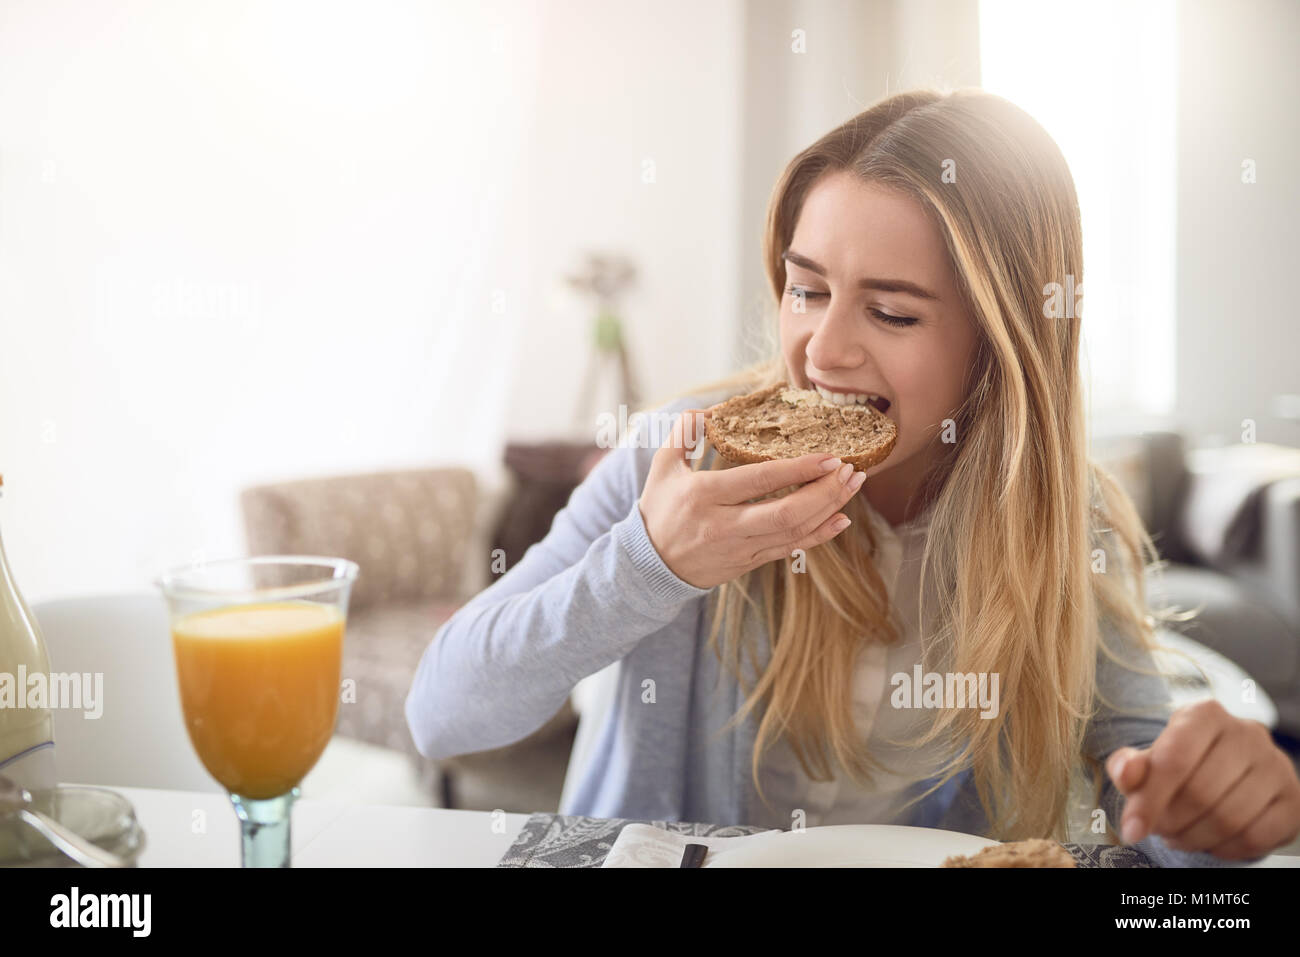 Jeune adolescente de prendre une bouchée d'un rouleau complet marron en bonne santé alors qu'elle bénéficie d'un petit-déjeuner sain à la maison avec un verre de jus d'orange juic Banque D'Images